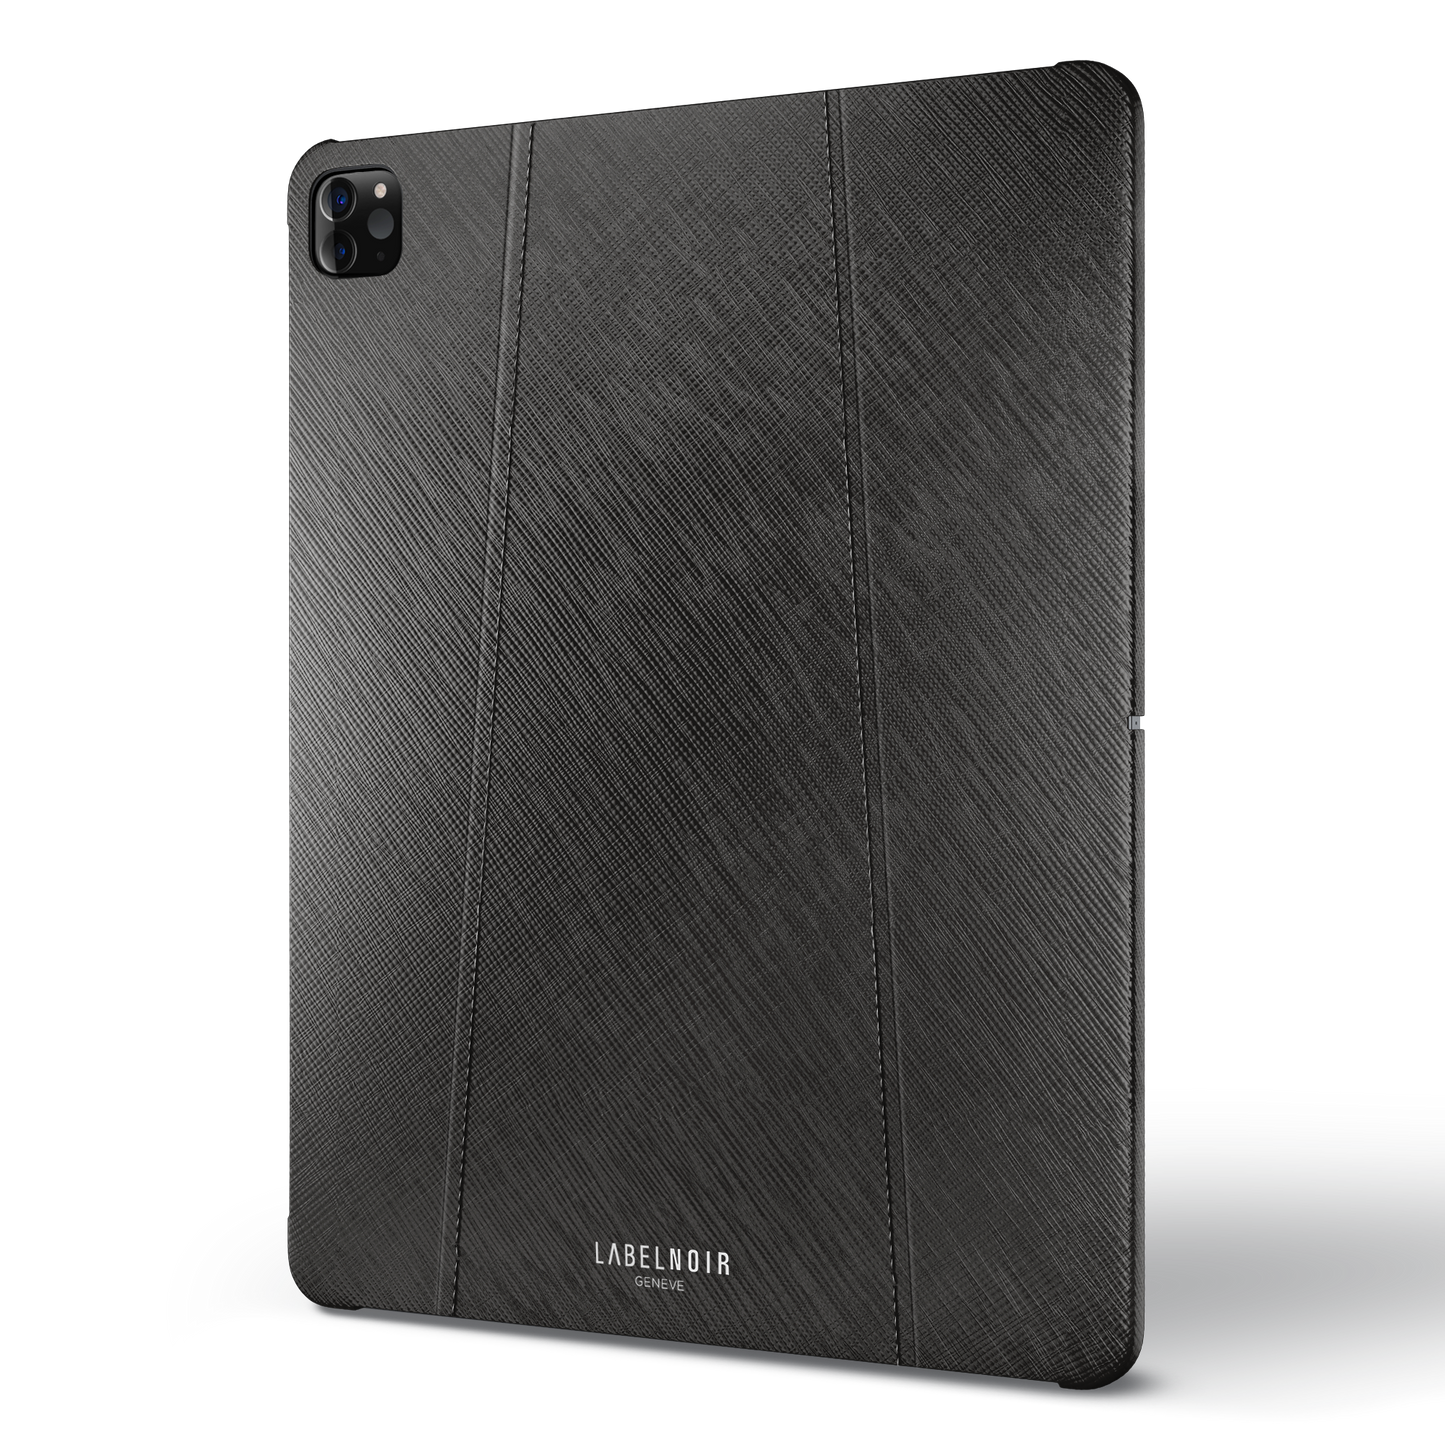 Ipad Pro (5th Gen) 12.9-inch Black Saffiano Case